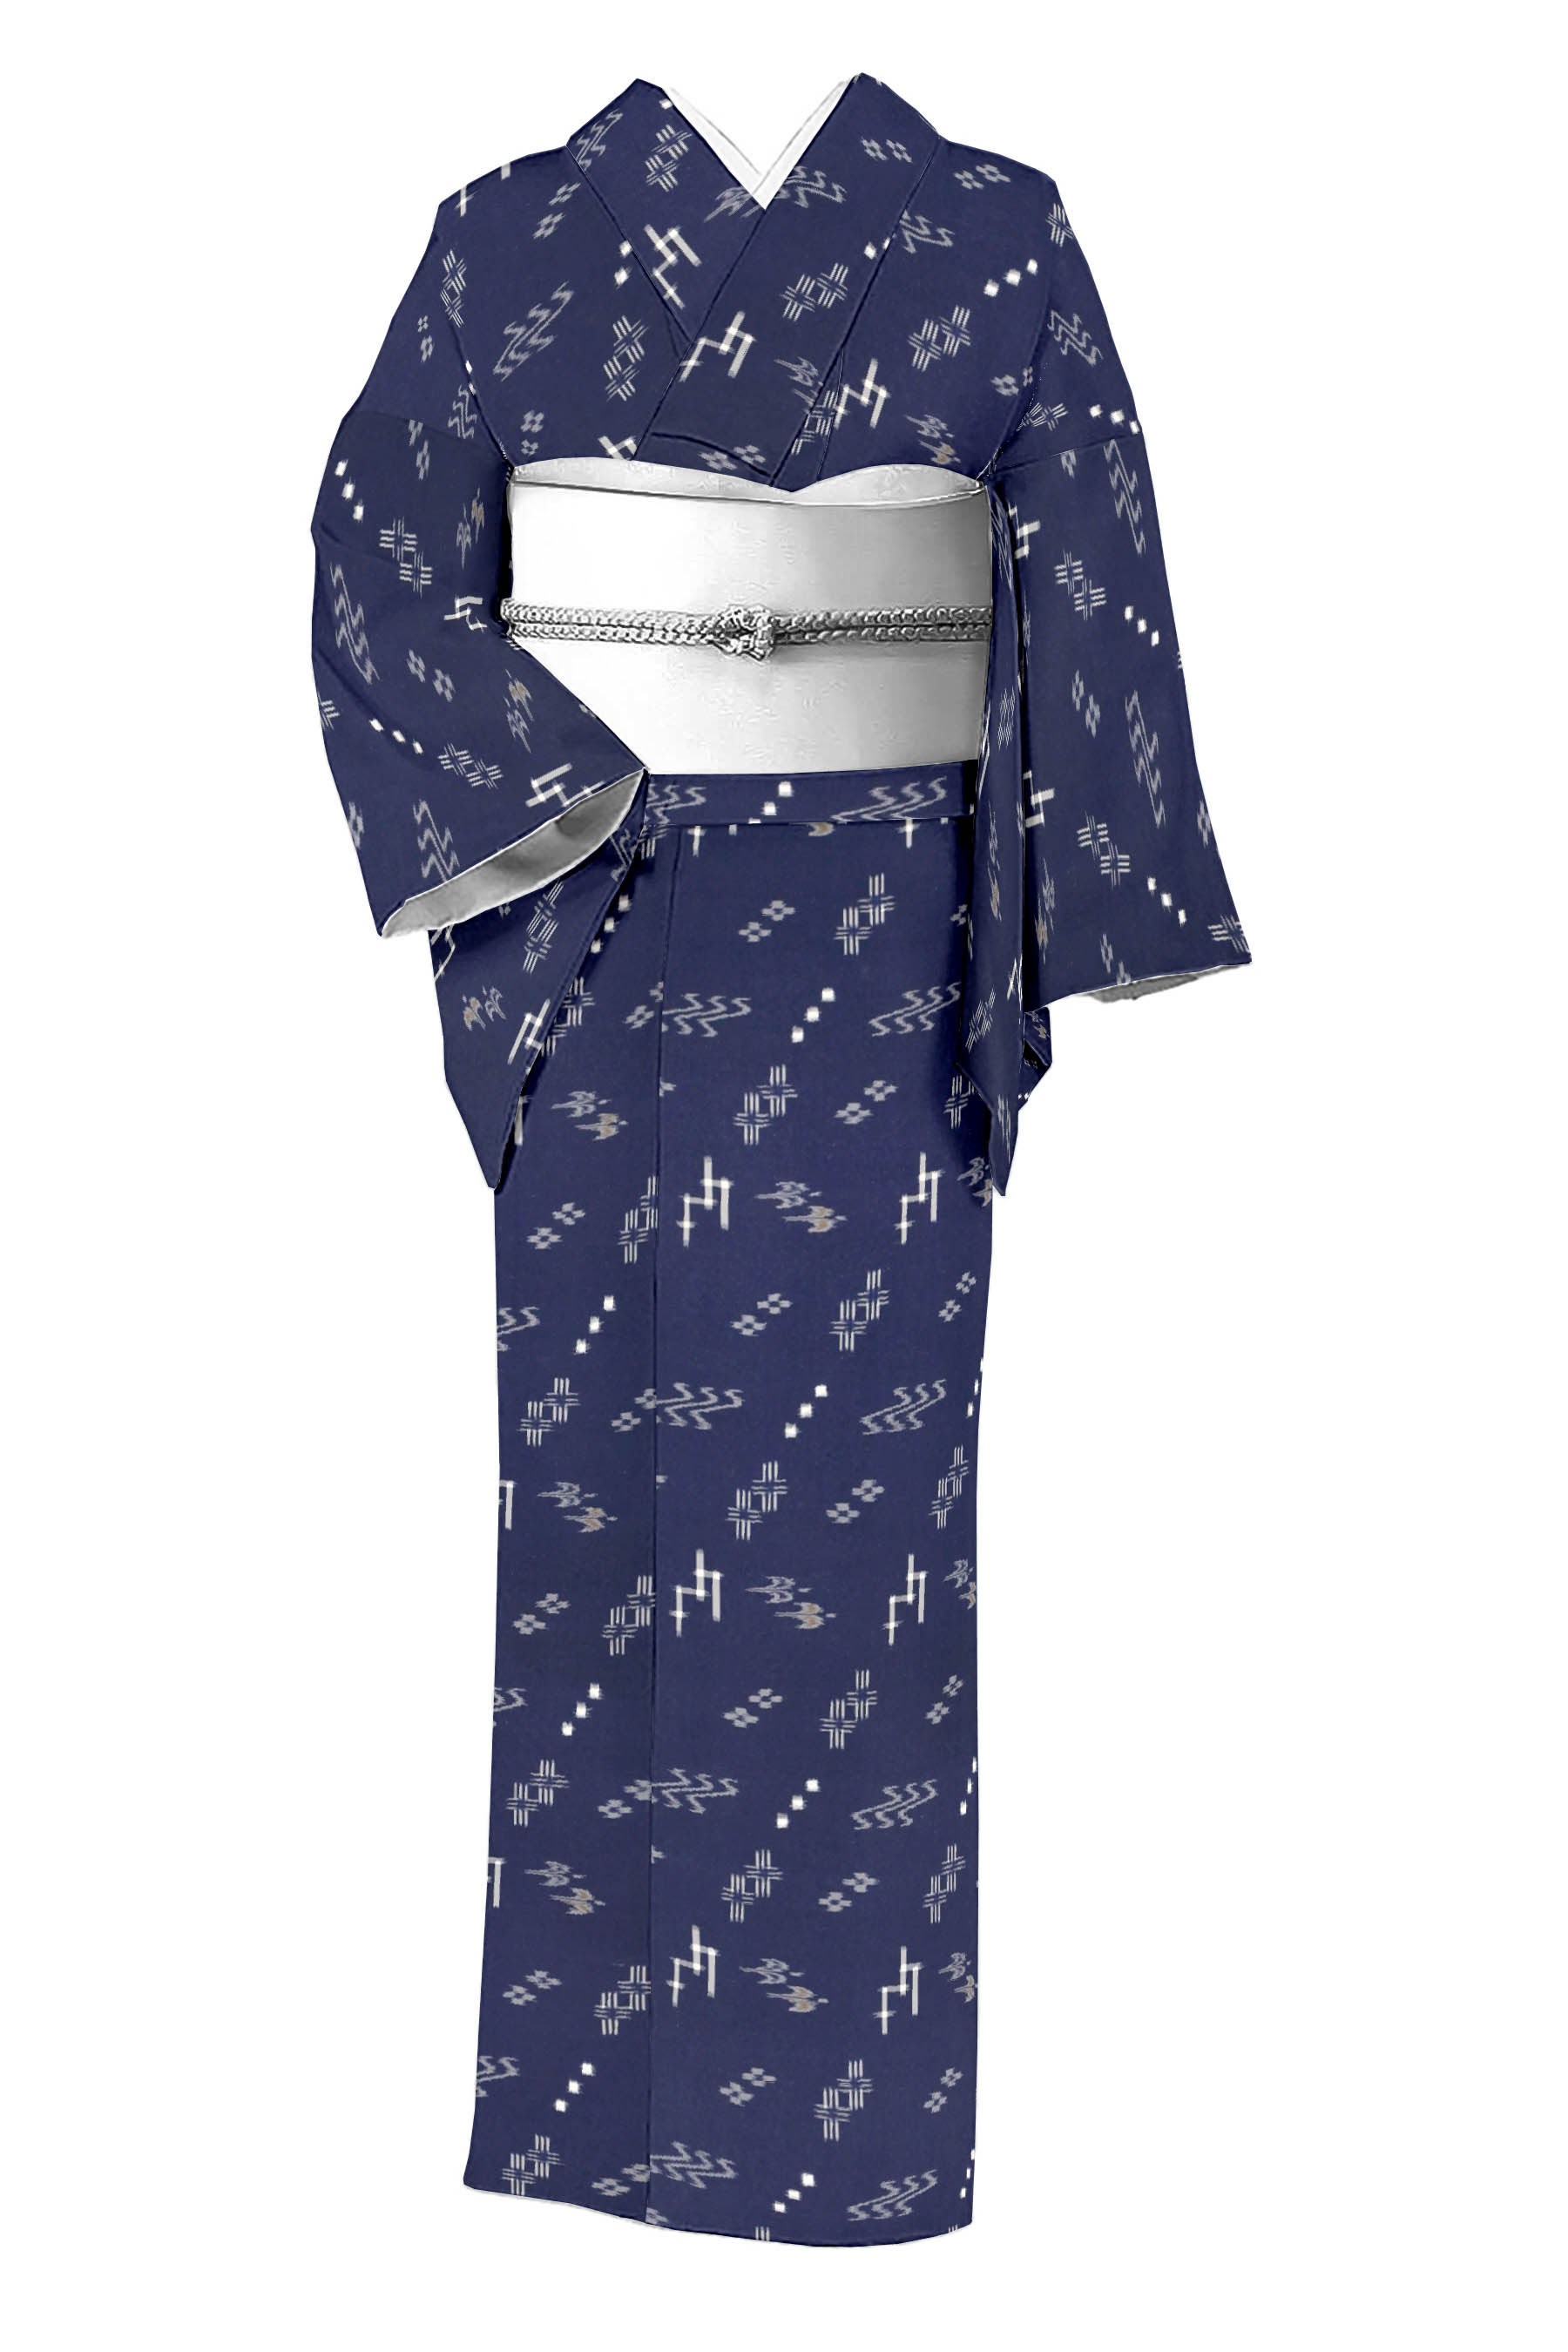 紬反物 正絹 琉球絣柄 こげ茶 着物 antique kimono B-0153 - dzhistory.com